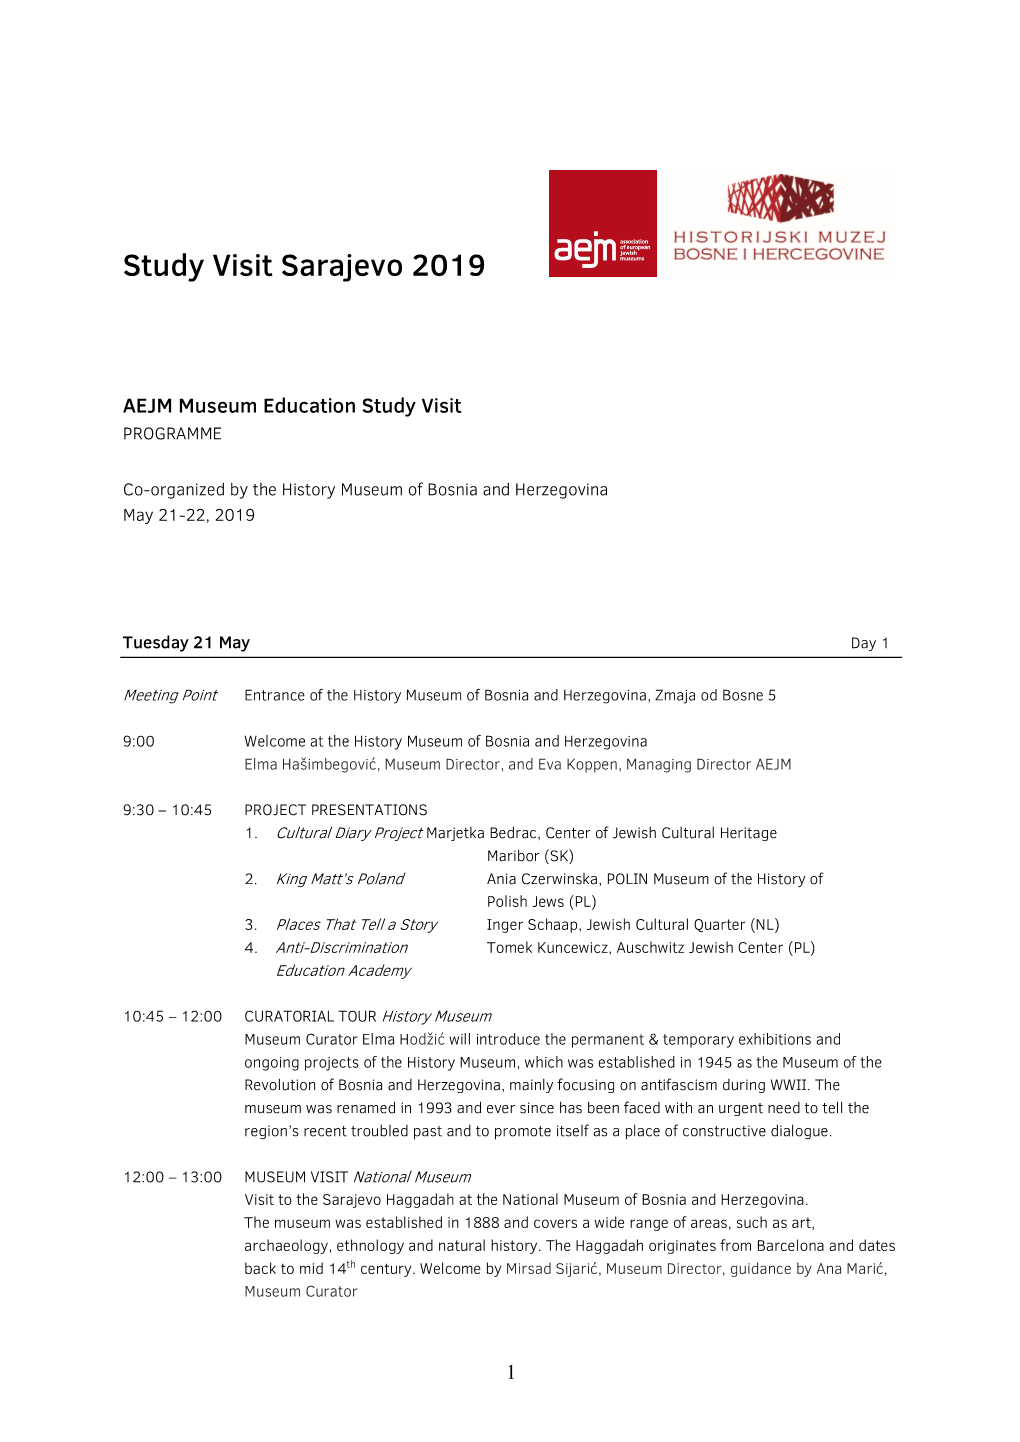 Programme Sarajevo Study Visit 2019